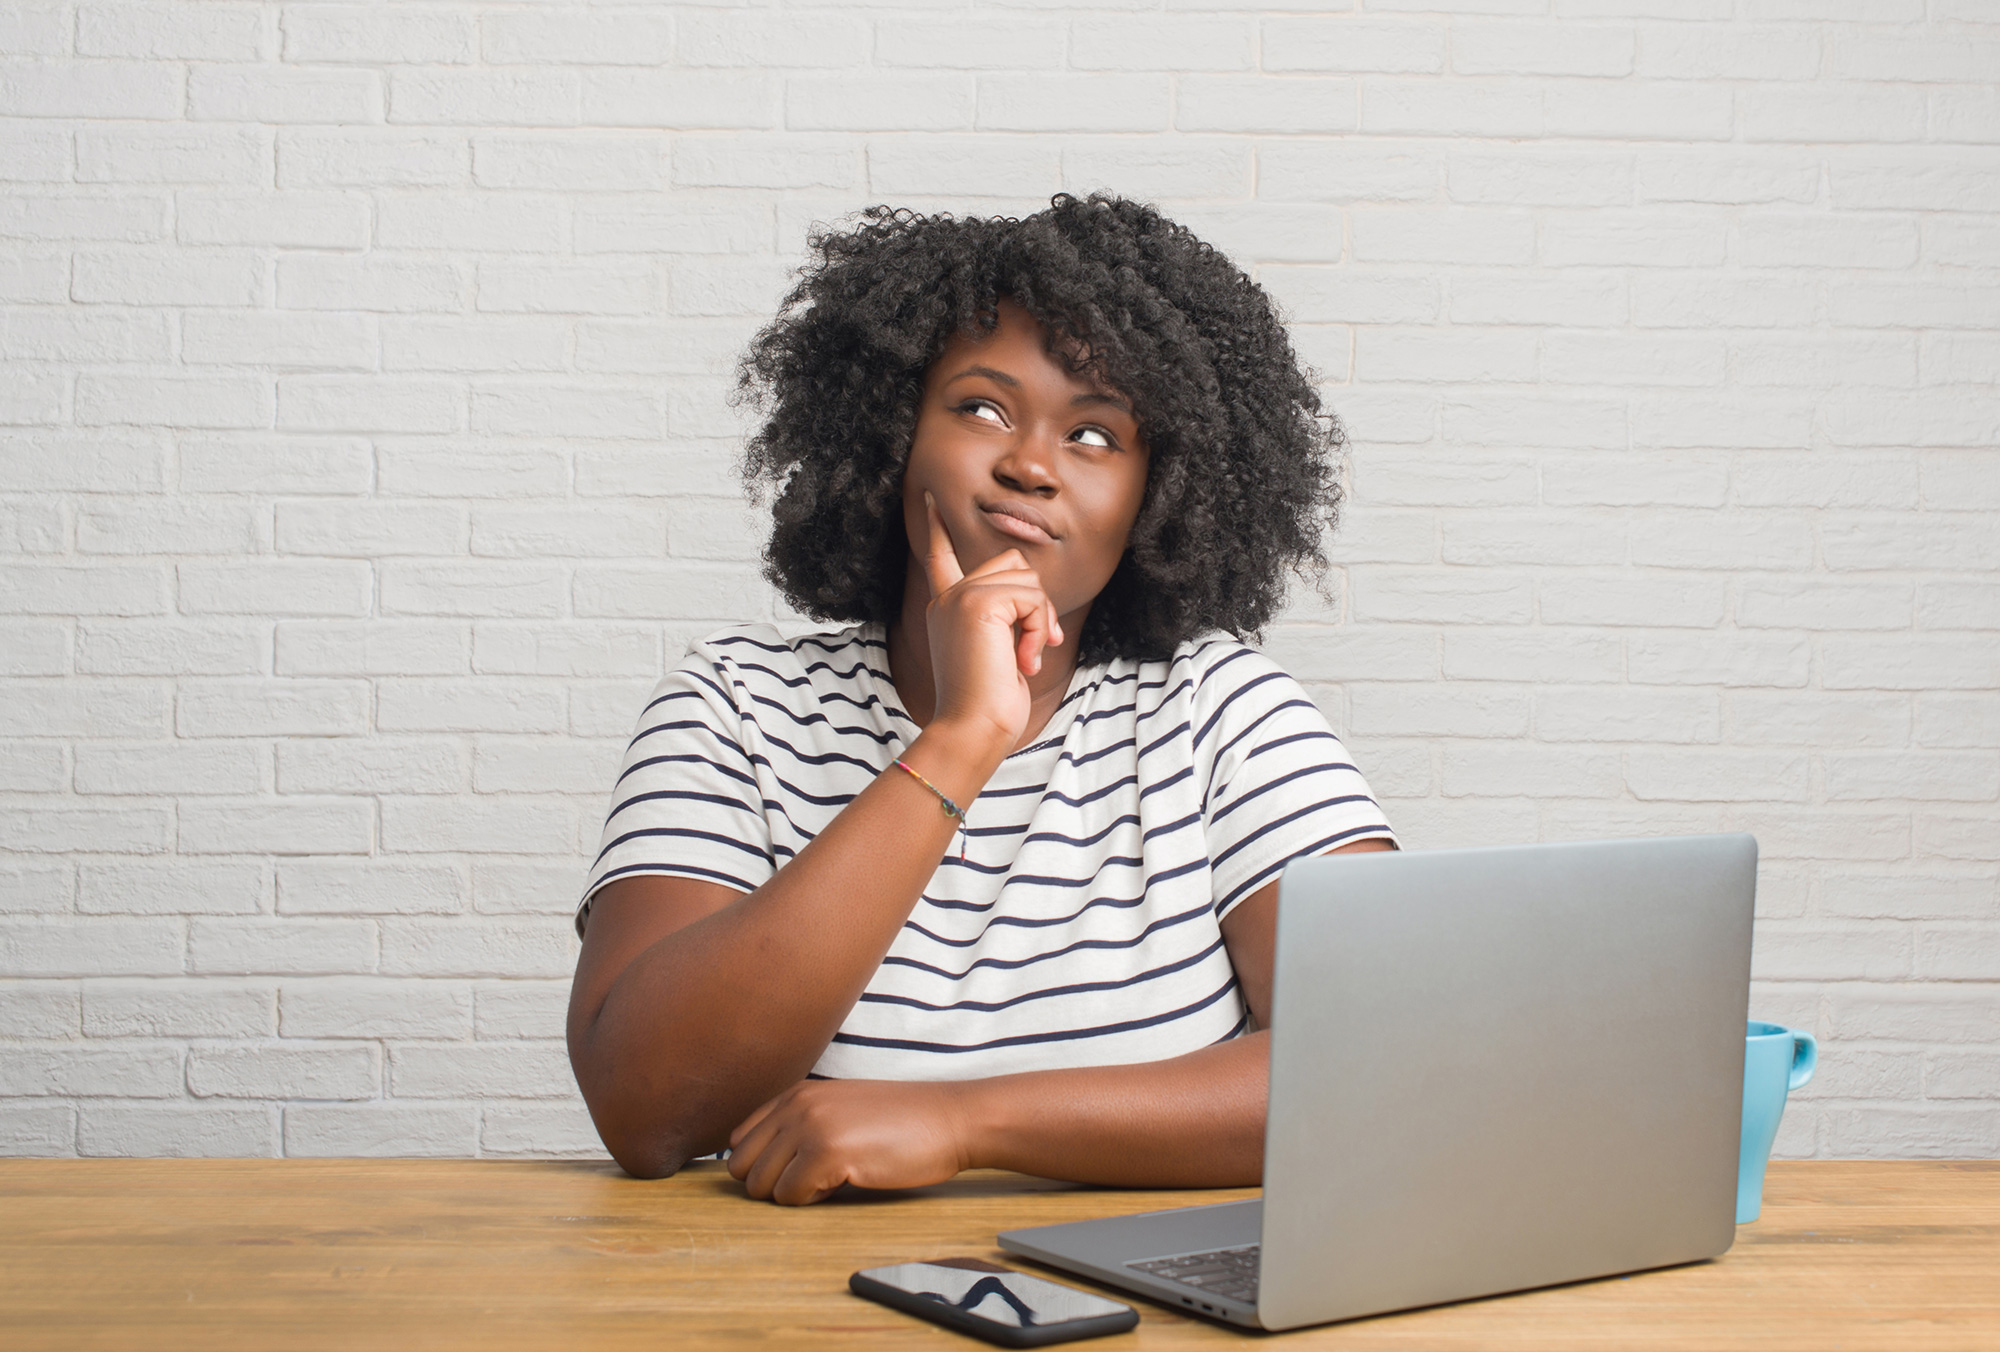 Una mujer hace un gesto de duda mientras está sentada frente a una computadora portátil abierta.